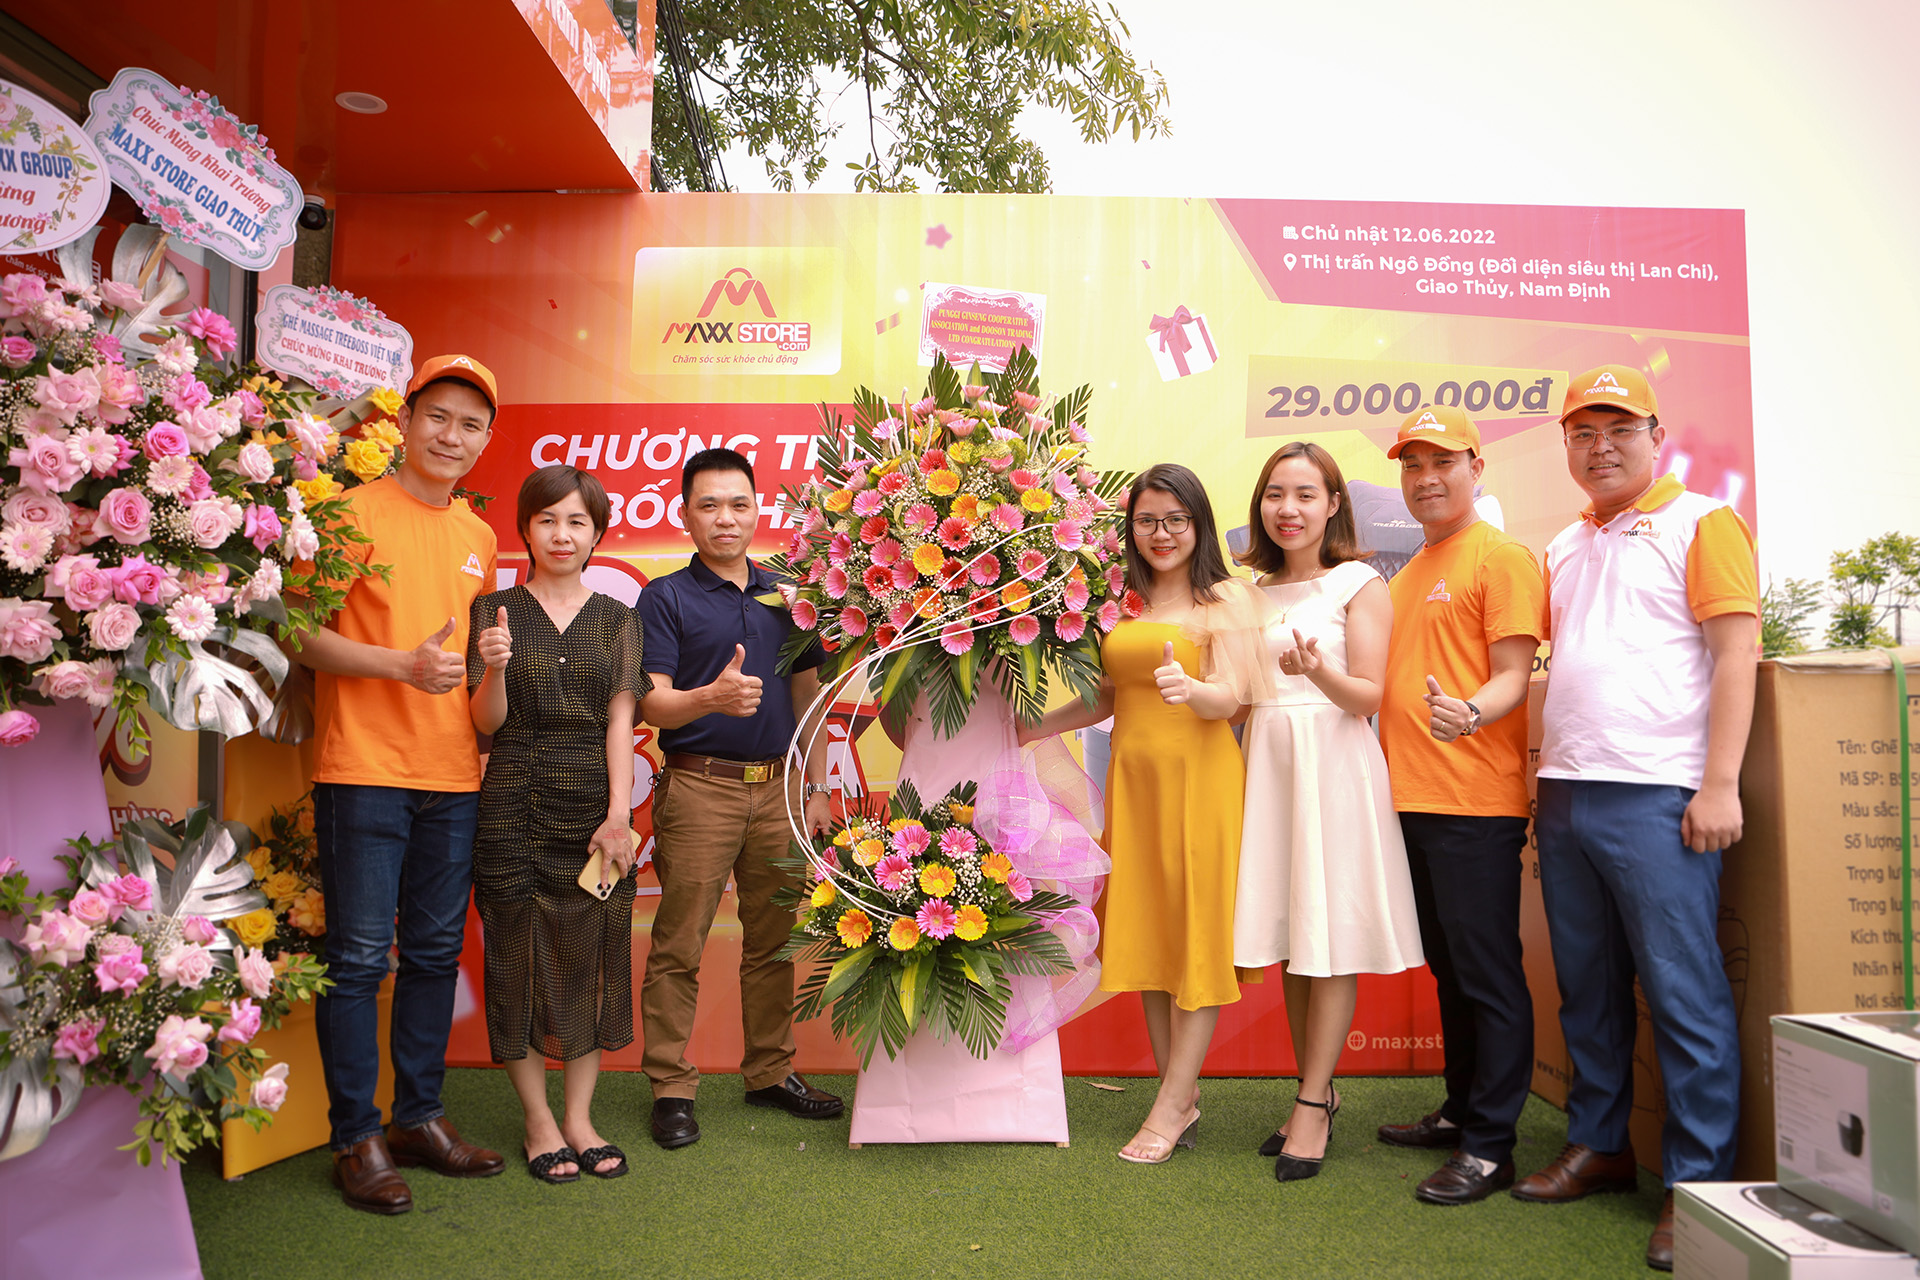 MAXXSTORE.COM - Thương hiệu bán lẻ các sản phẩm chăm sóc sức khỏe khai trương cửa hàng tại Nam Định